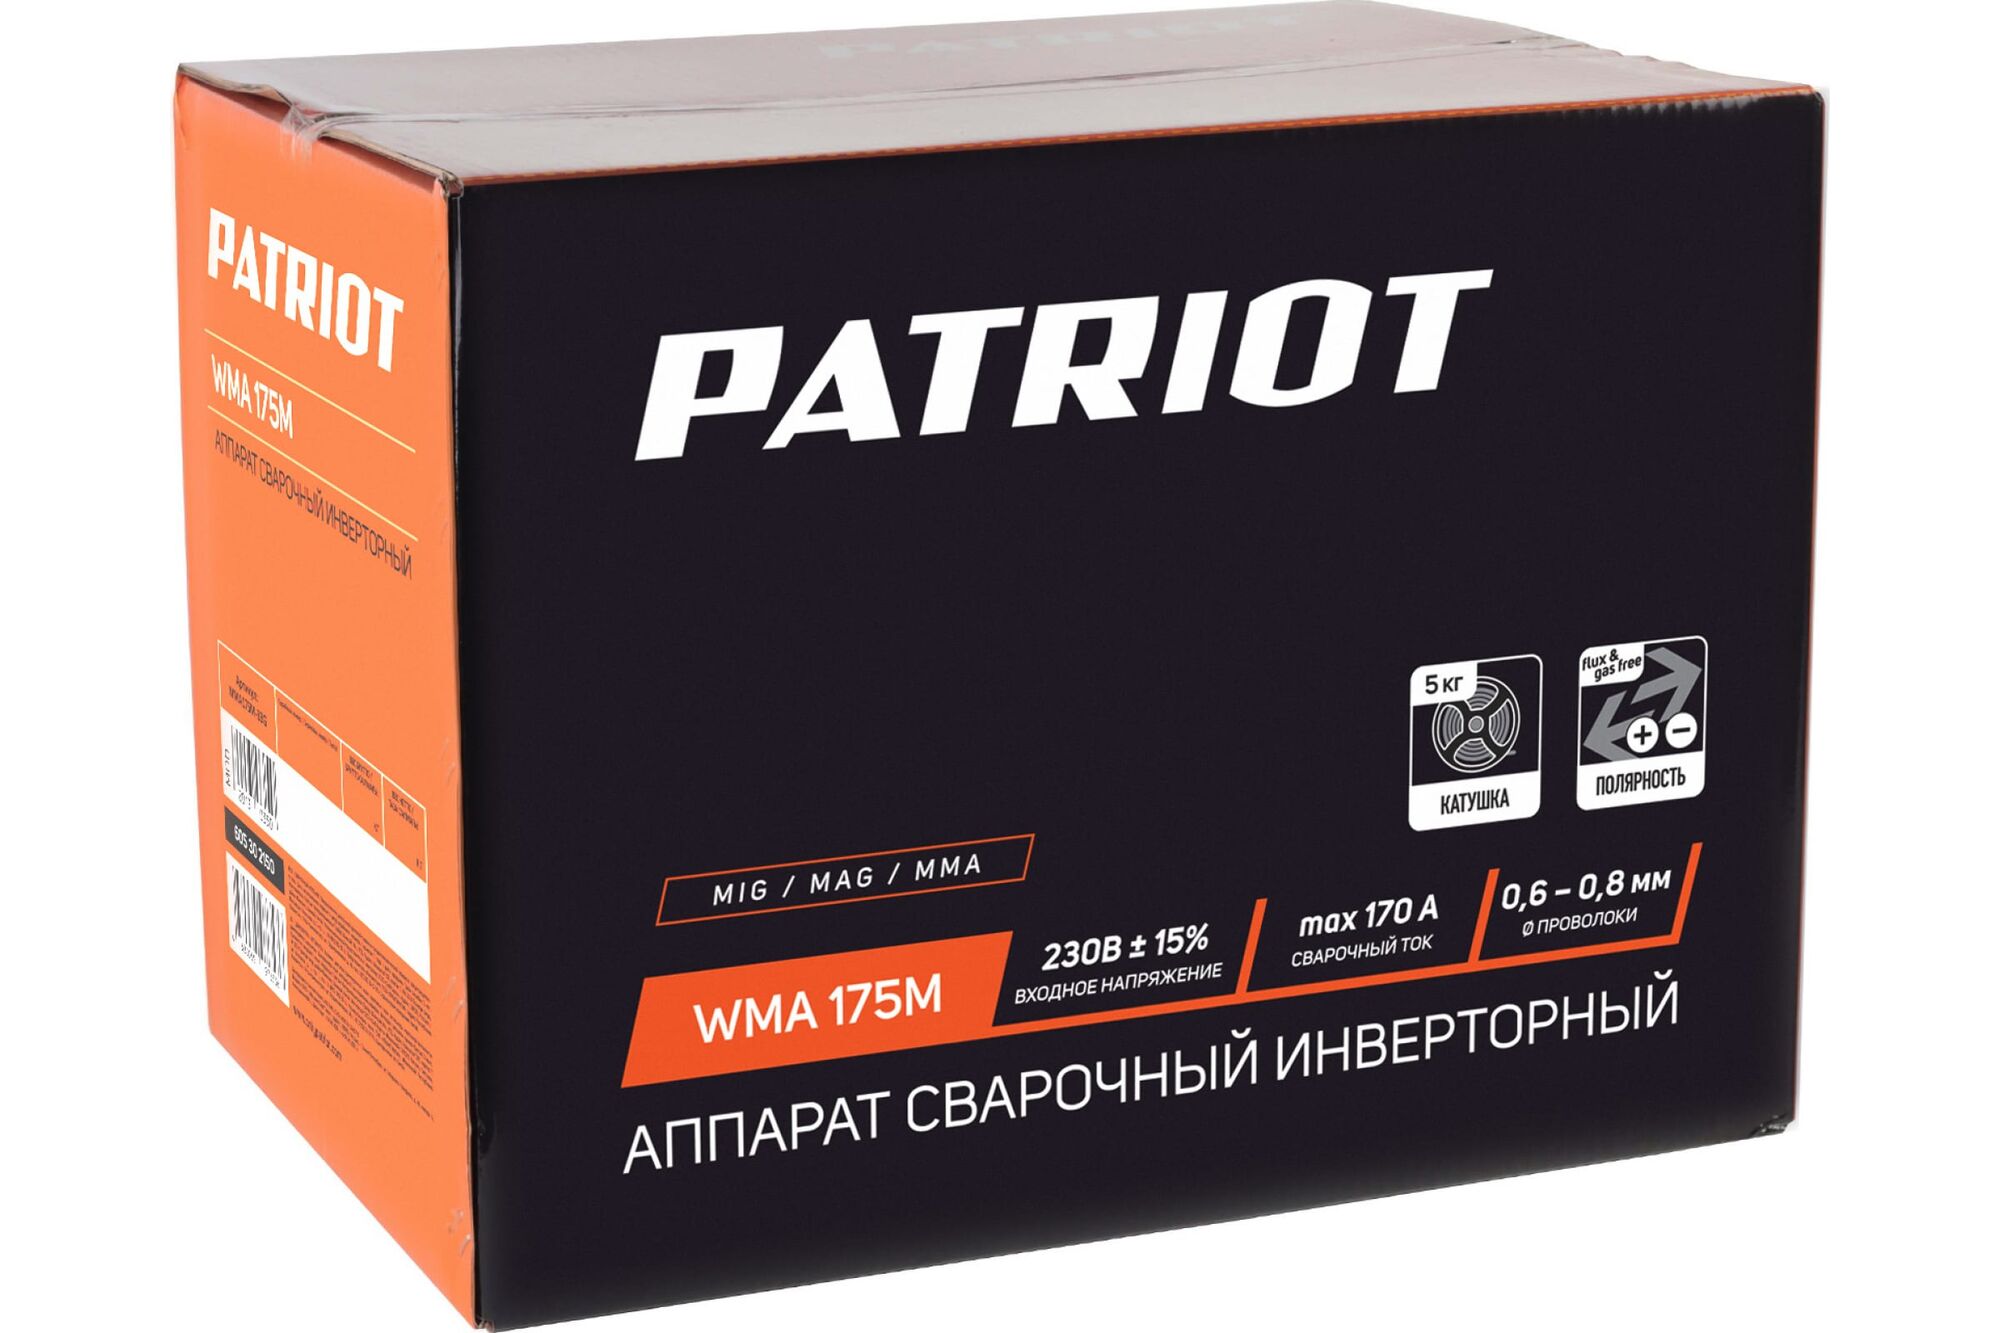 Сварочный инверторный полуавтомат PATRIOT WMA 175M MIG/MAG/MMA, полуавтоматическая сварка в среде 605302150 Patriot 11